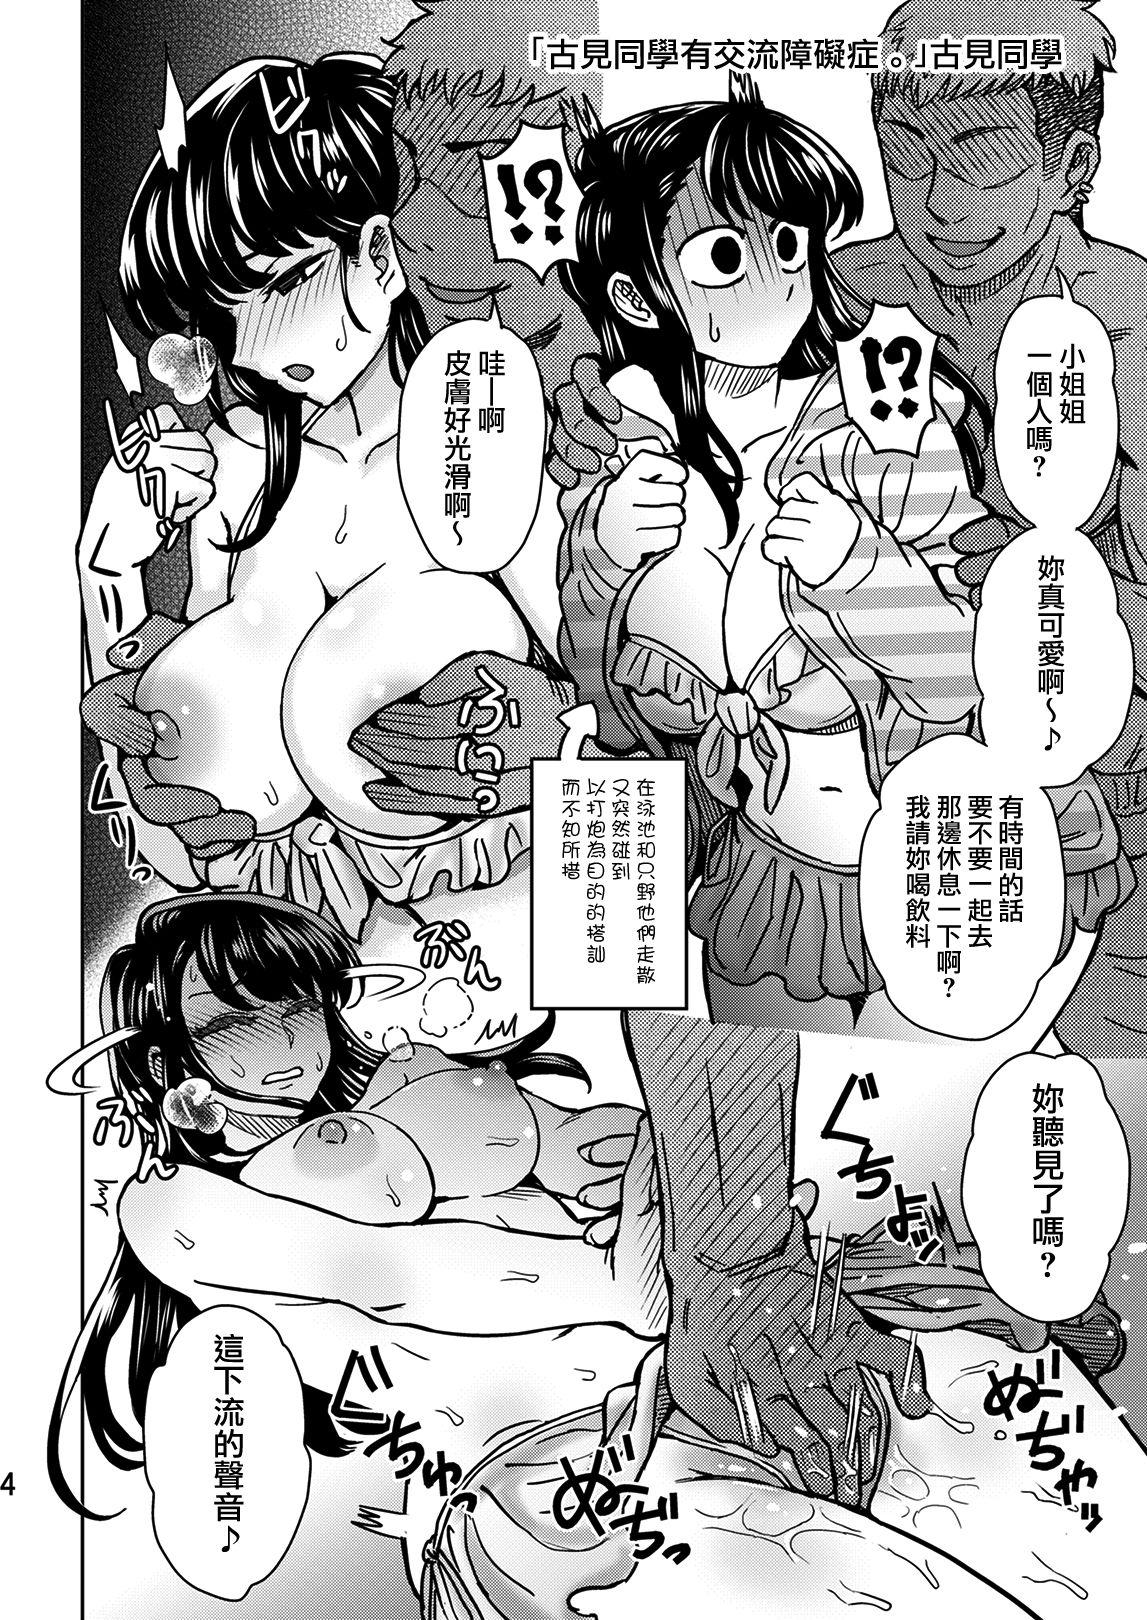 Orgasmo C95 Yorozu NTR Short Manga Shuu - Komi-san wa komyushou desu. Dildos - Page 5